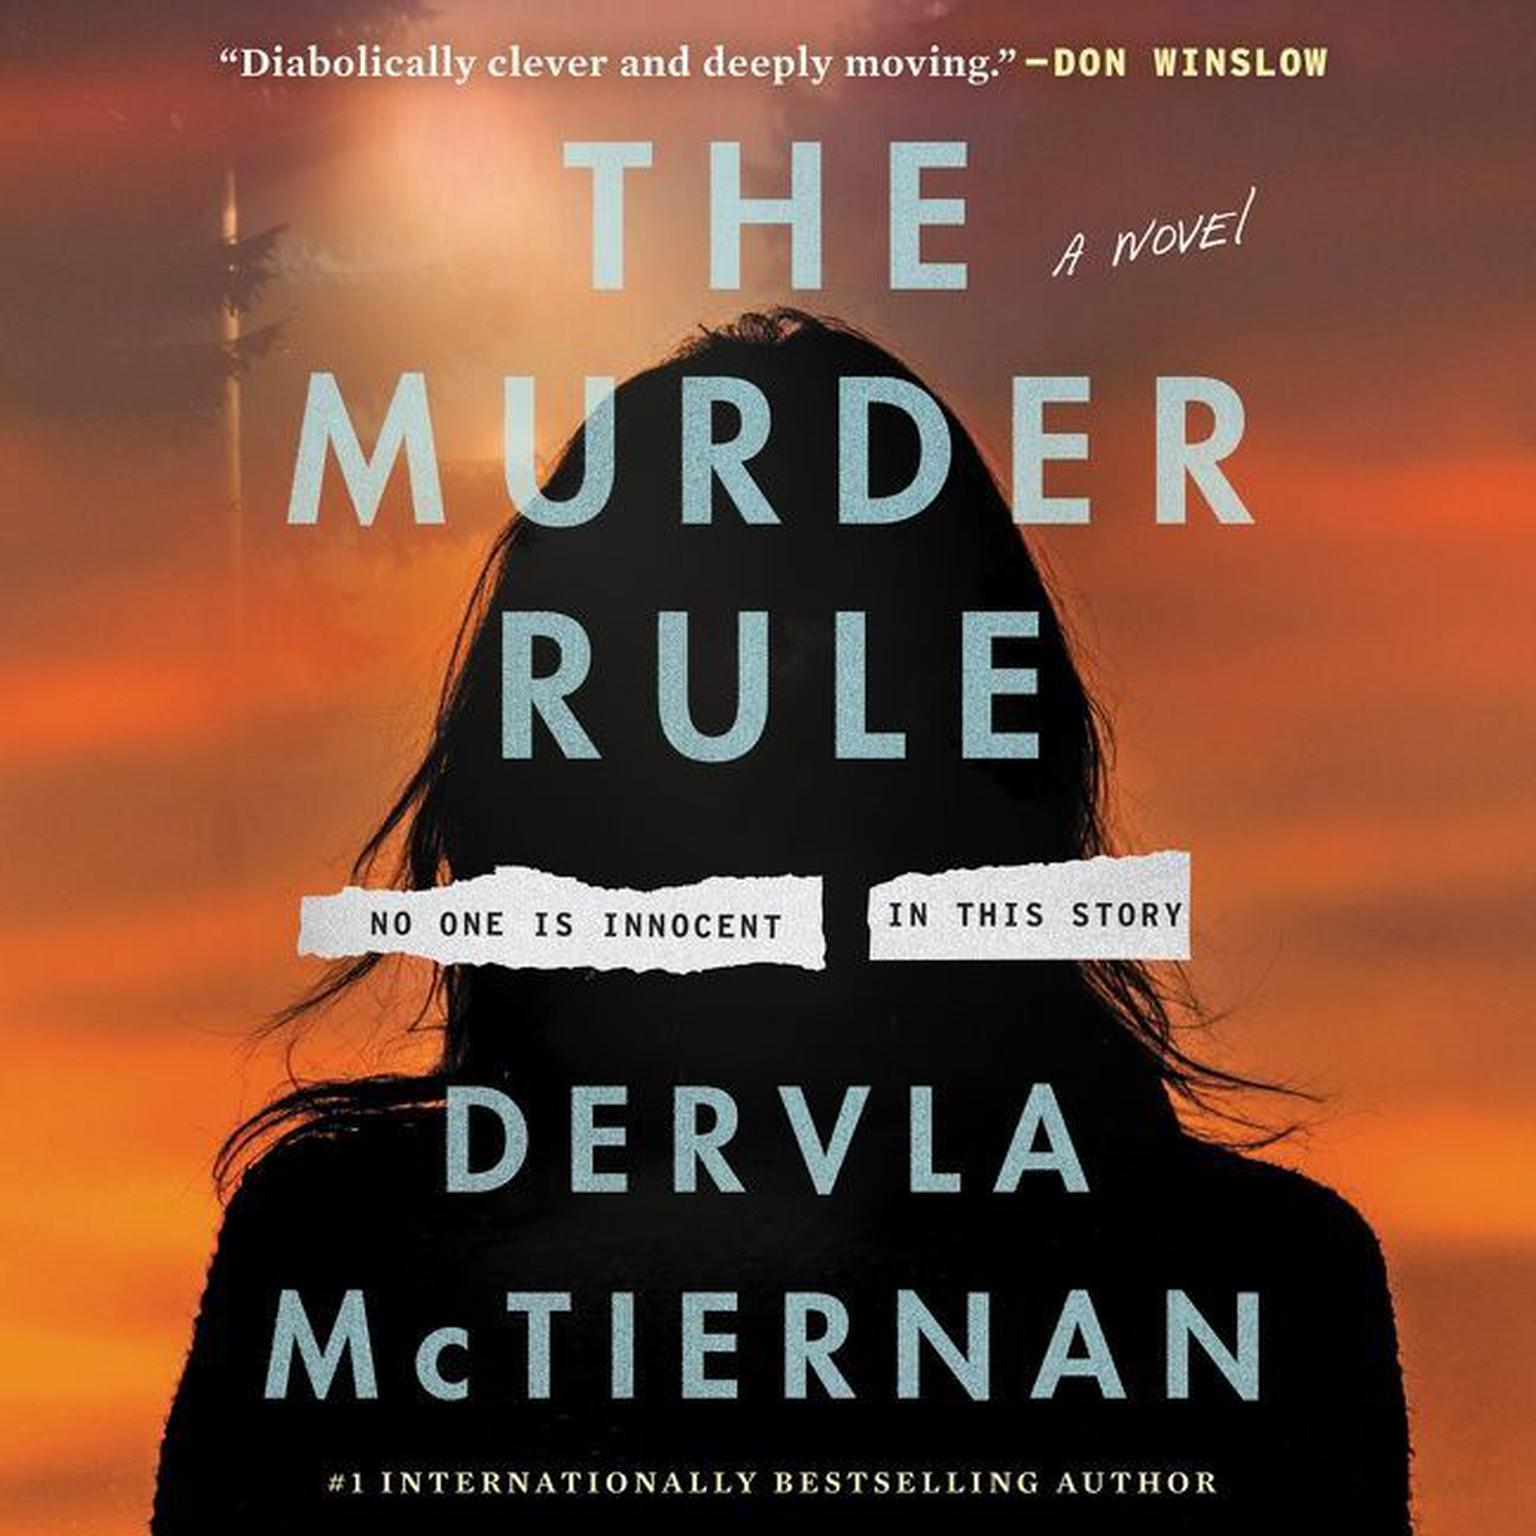 The Murder Rule: A Novel Audiobook, by Dervla McTiernan